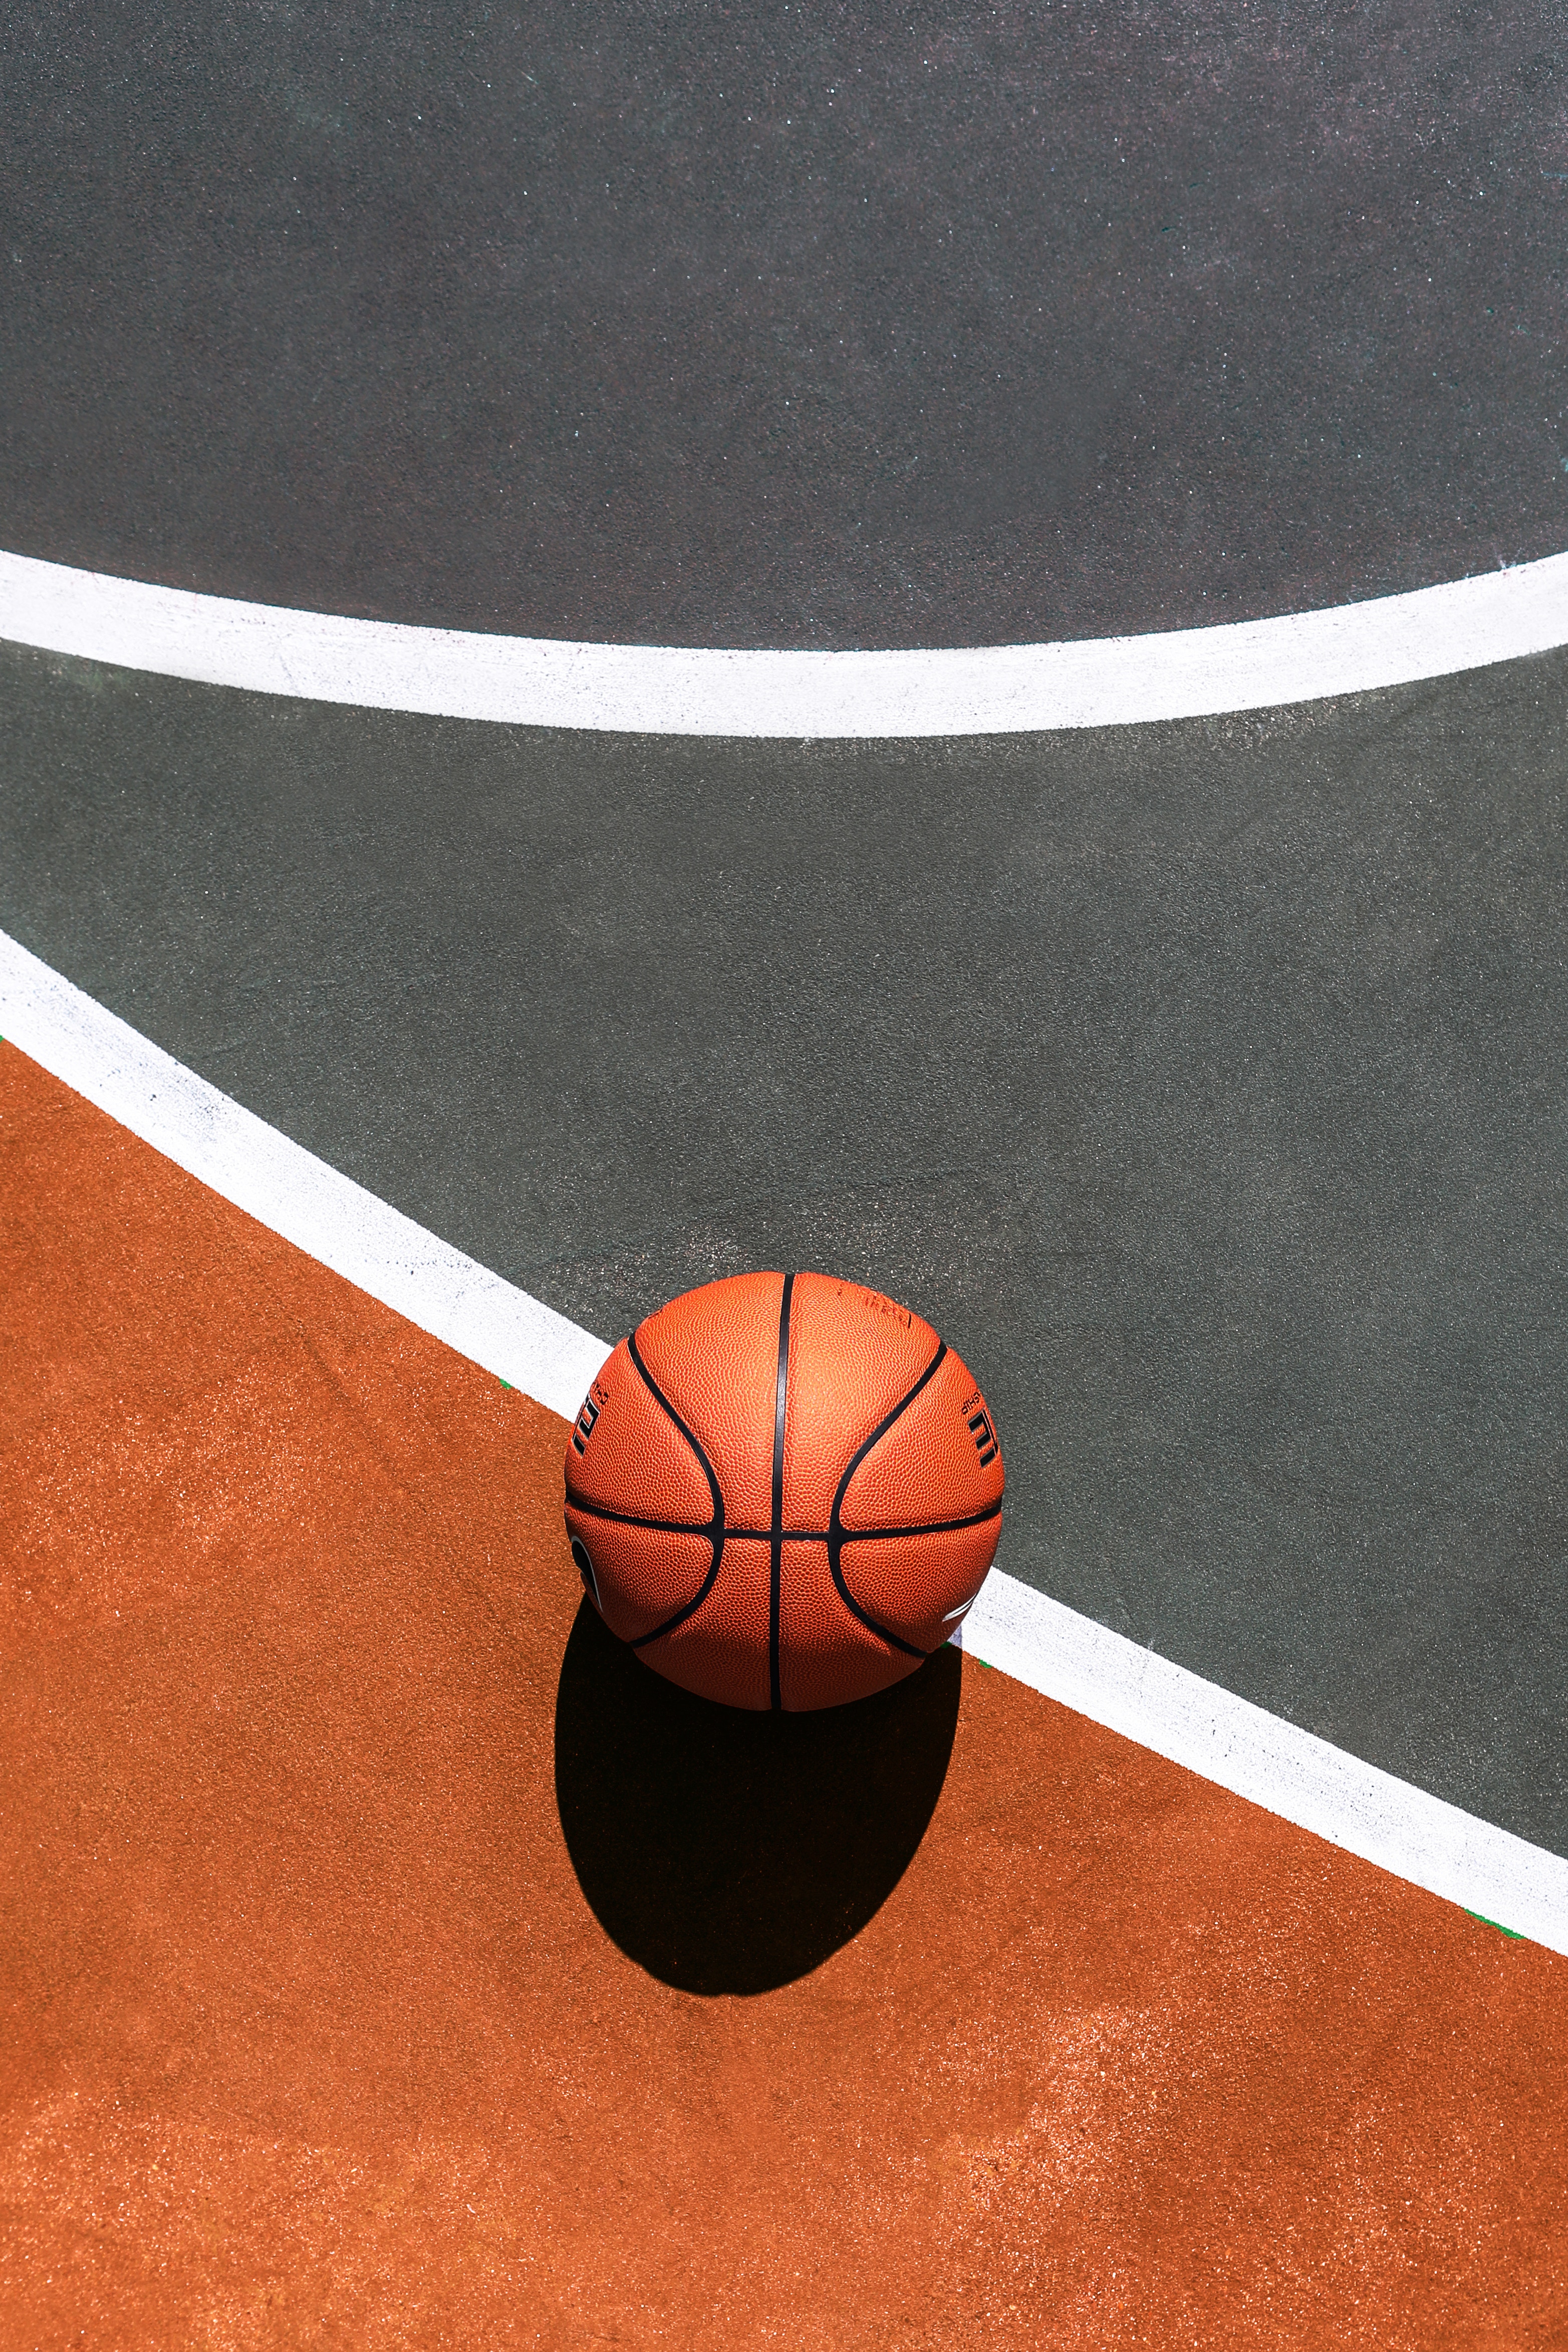 Basketball Basketball Court Sport Top View Balls 3130x4695